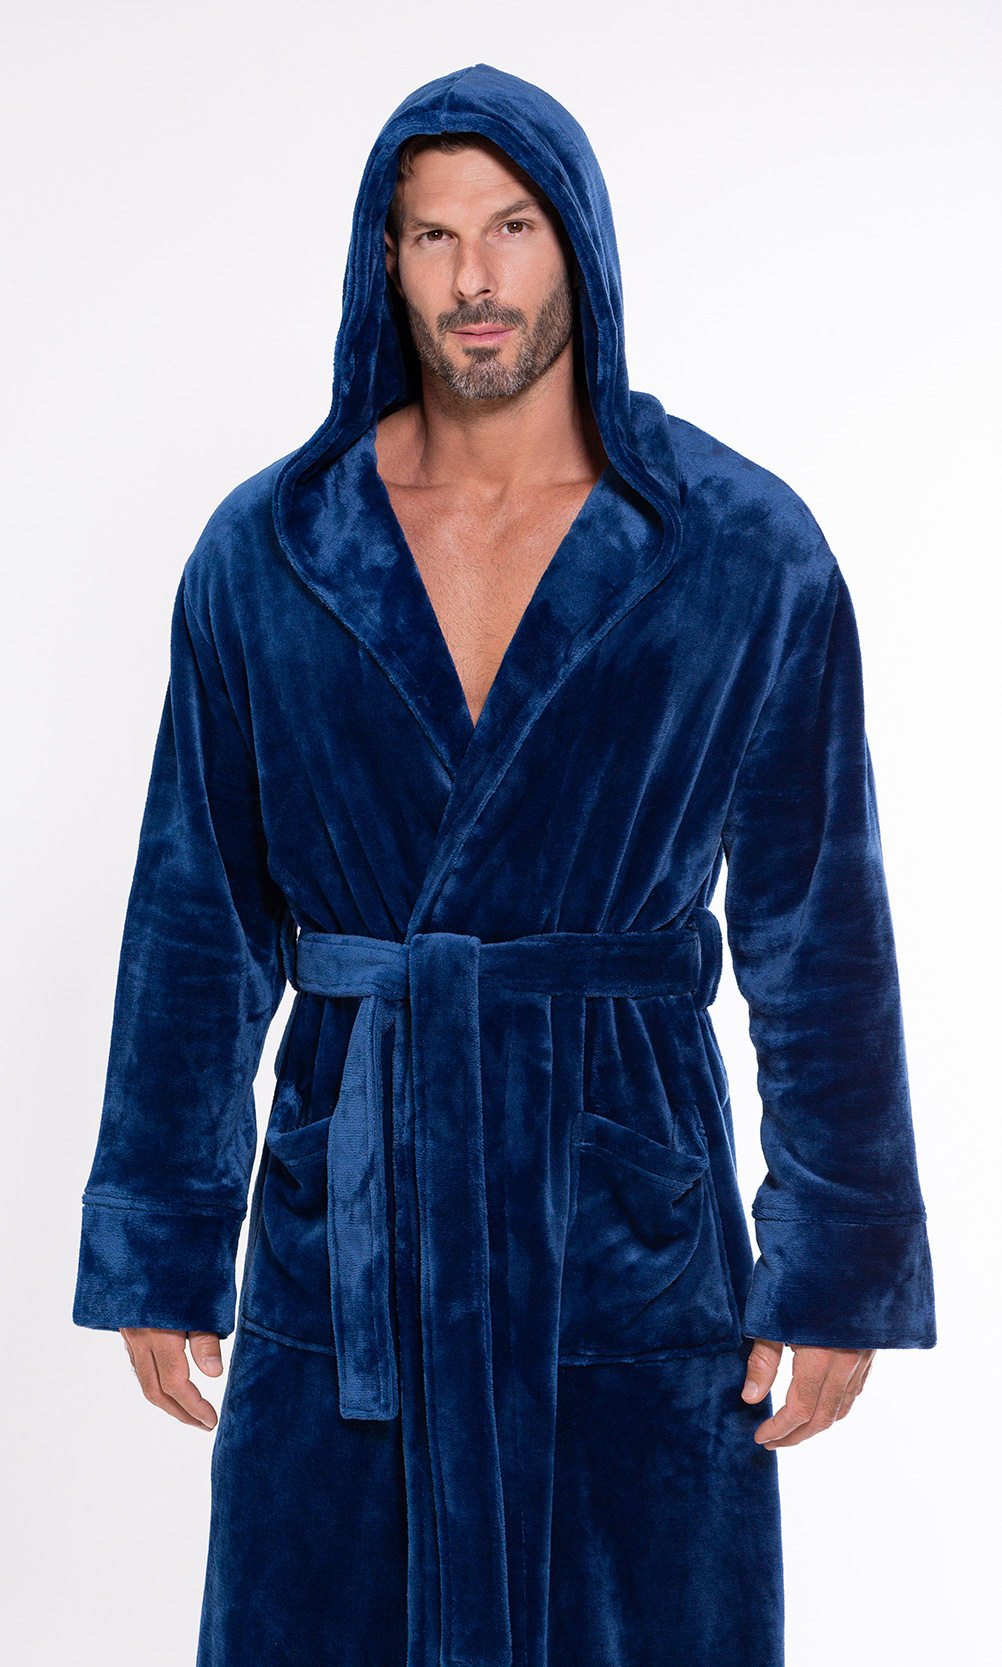 Men's Hooded Soft Plush Fleece Bathrobe Full Length Robe - On Sale